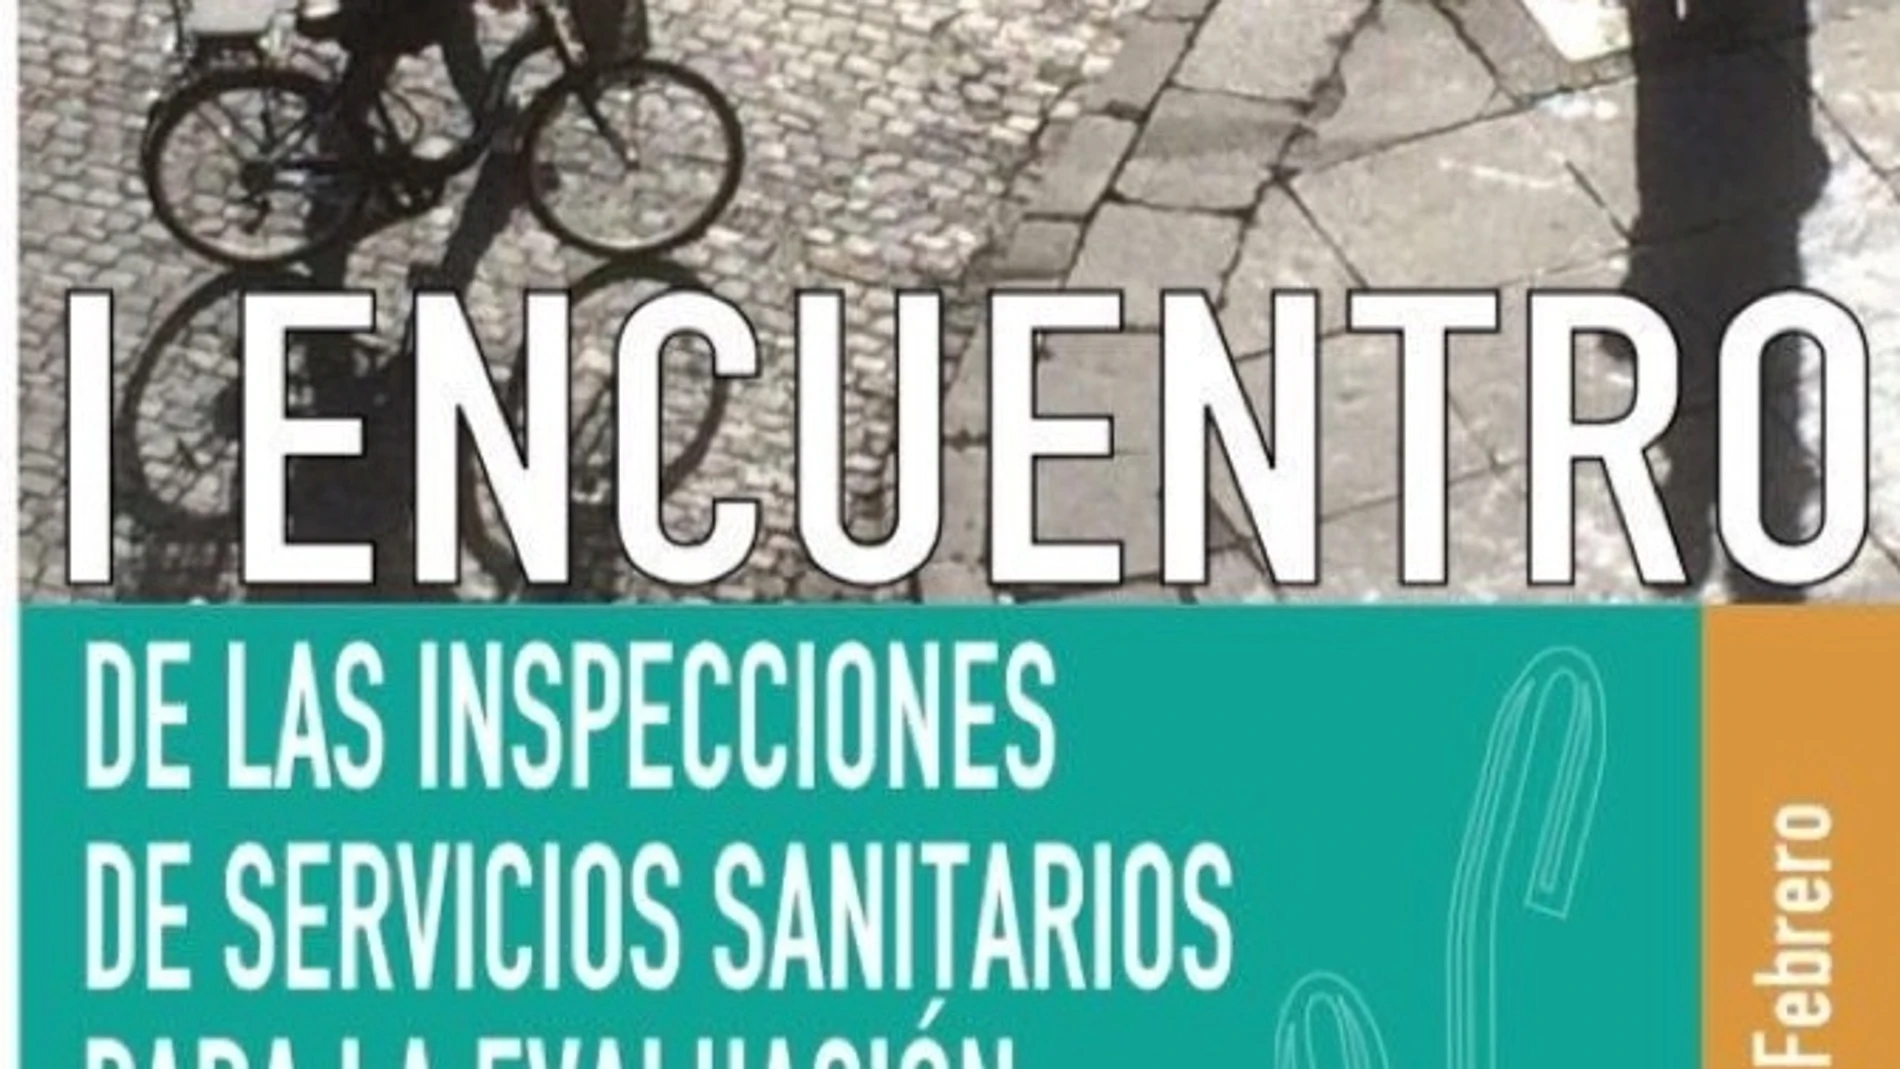 El encuentro nacional de las inspecciones se celebró en Sevilla